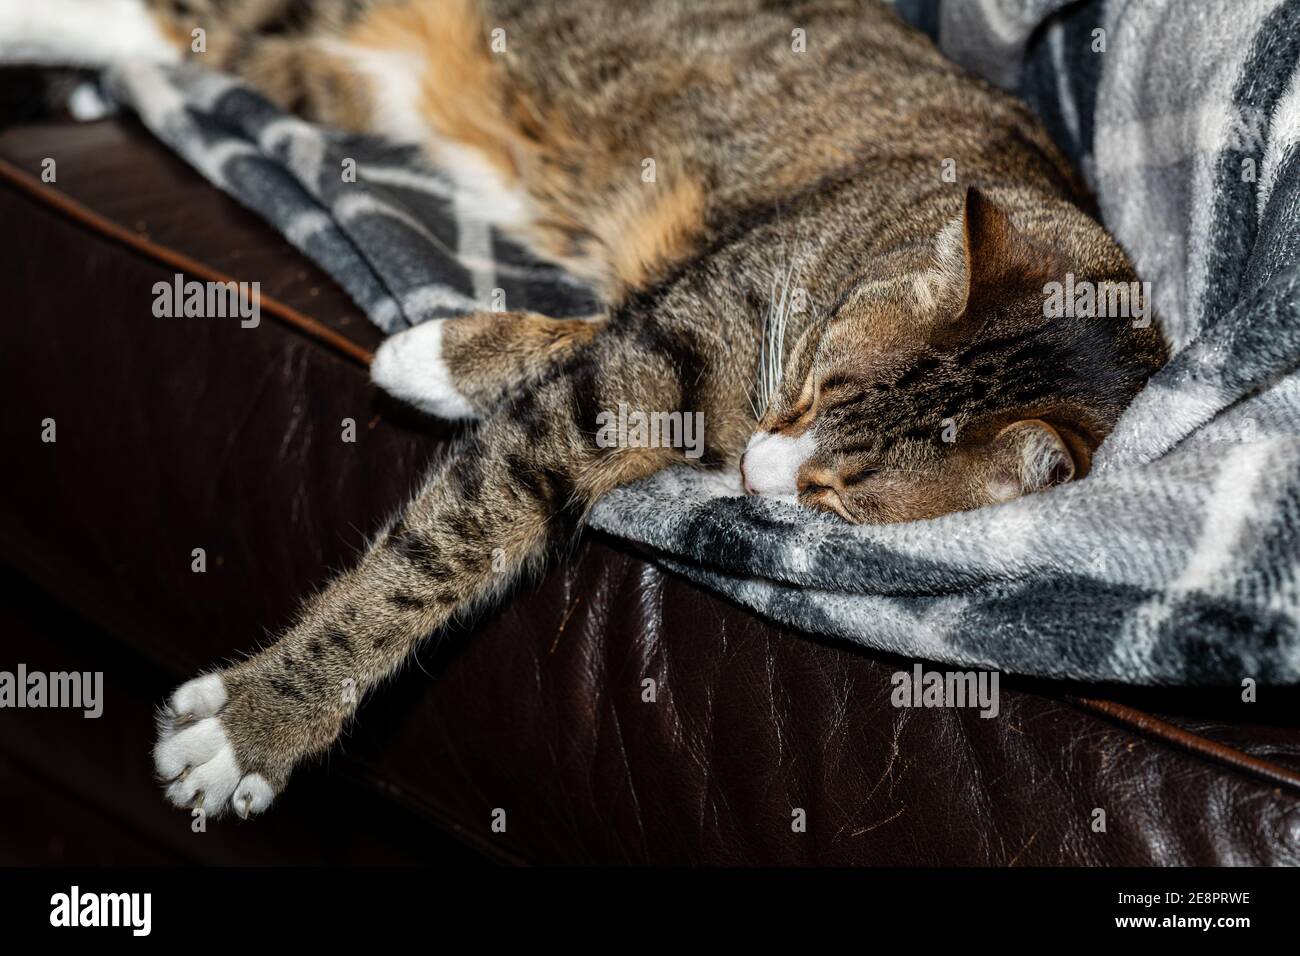 Ein entzückendes Tabby-Kätzchen kuschelte sich auf einer Decke, die mit einem schlafenden Menschen zusammengeknuddelt war. Stockfoto